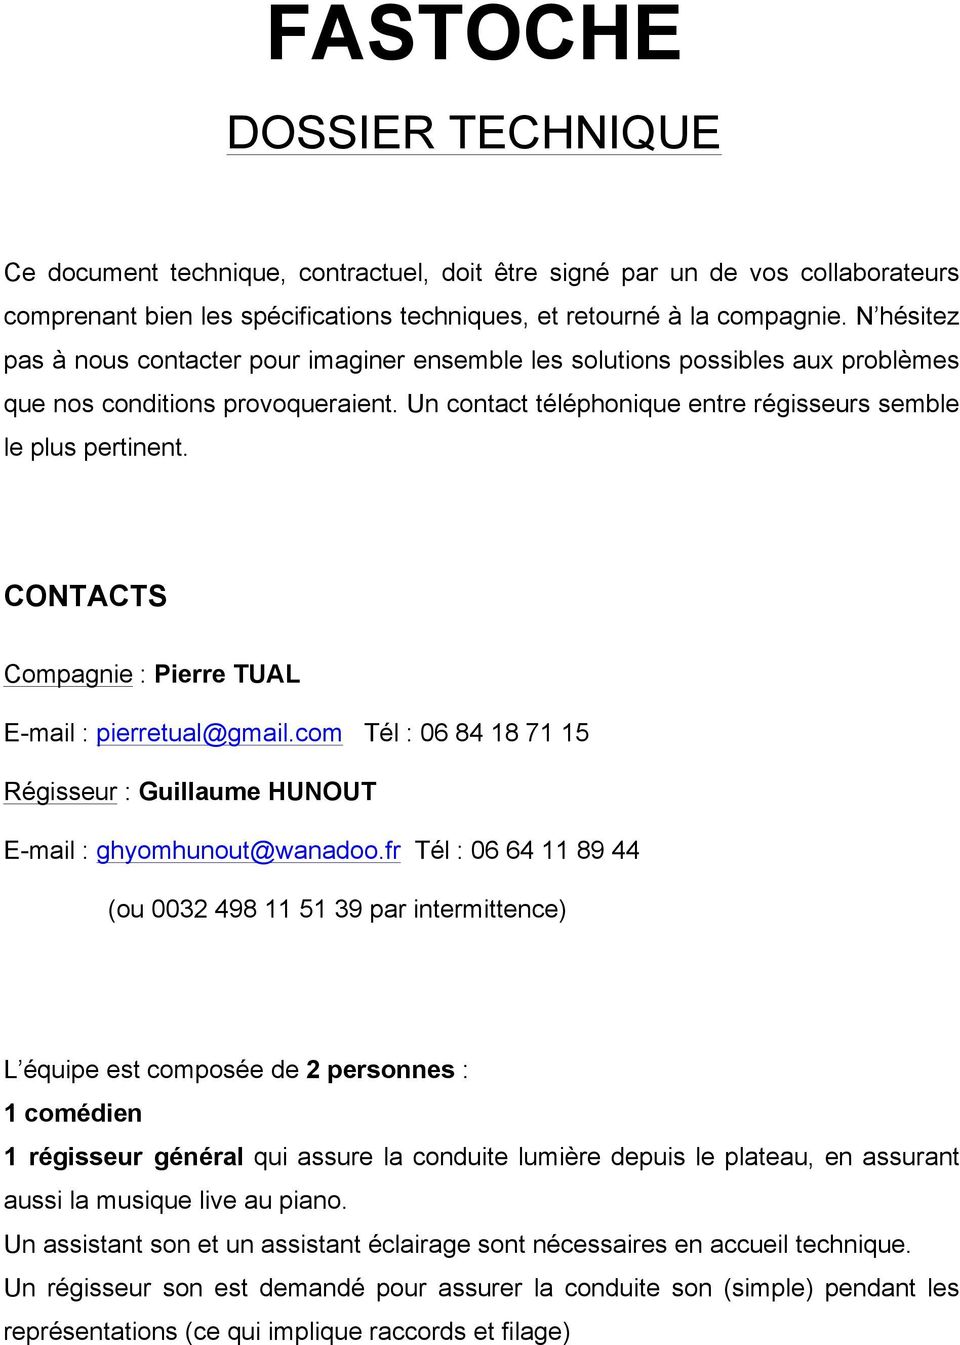 CONTACTS Compagnie : Pierre TUAL E-mail : pierretual@gmail.com Tél : 06 84 18 71 15 Régisseur : Guillaume HUNOUT E-mail : ghyomhunout@wanadoo.